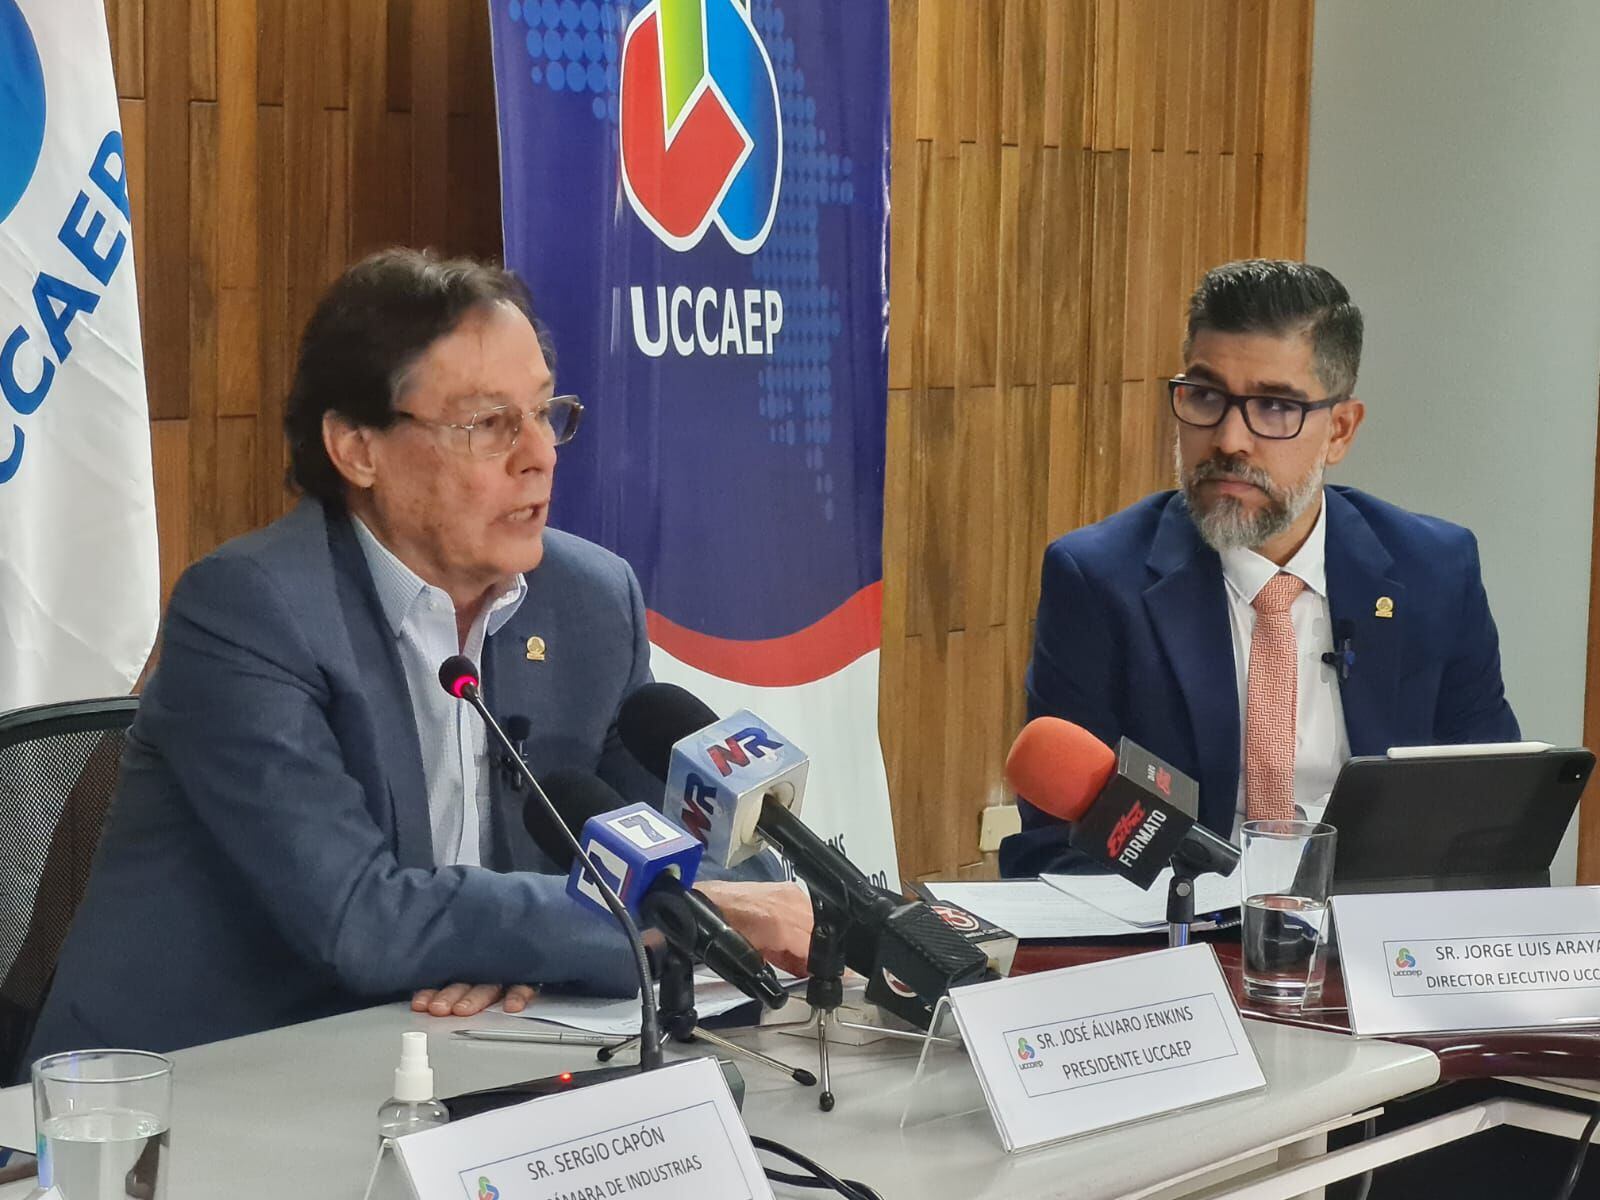 José Álvaro Jenkis, presidente de Uccaep, dijo que hay tendencia a la baja sobre la evolución de la economía costarricense. Le acompaña José Luis Araya, director ejecutivo de la organización empresarial.